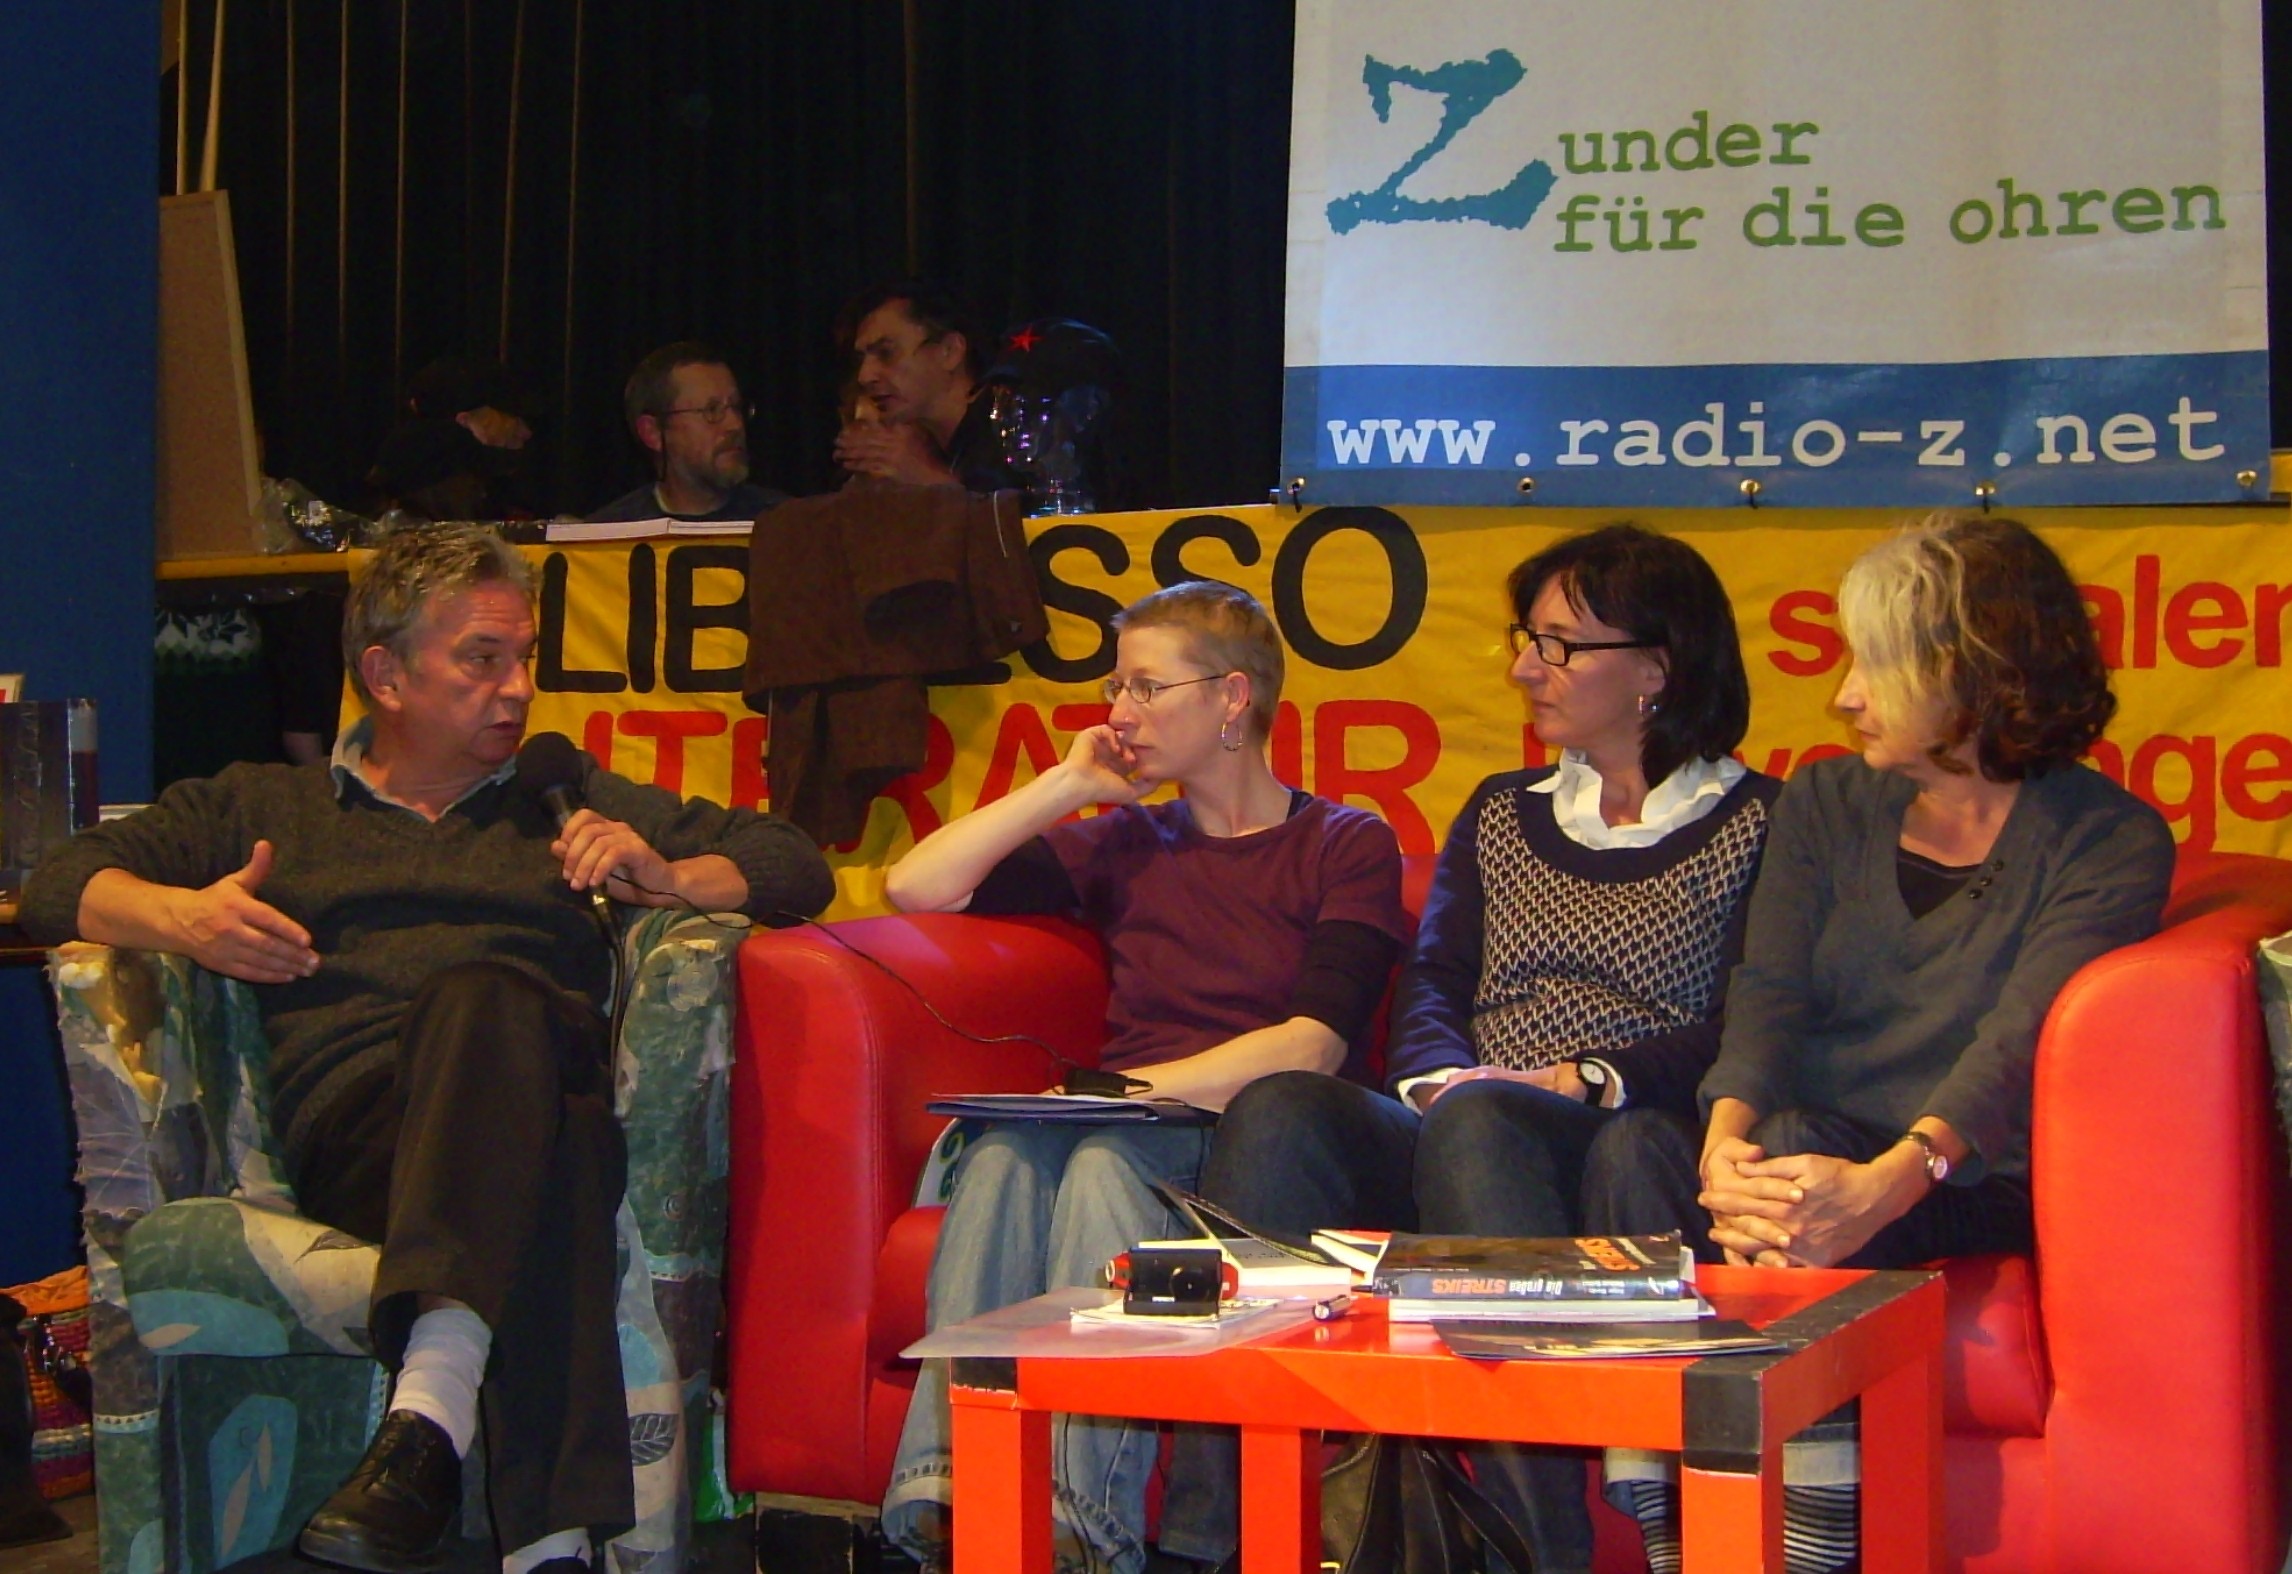 Edorta Jimenez, a la izquierda, y Arantxa Urretabizkaia, en la derecha, durante una entrevista que ofrecieron en la radio alemana (foto Bost Kultura)